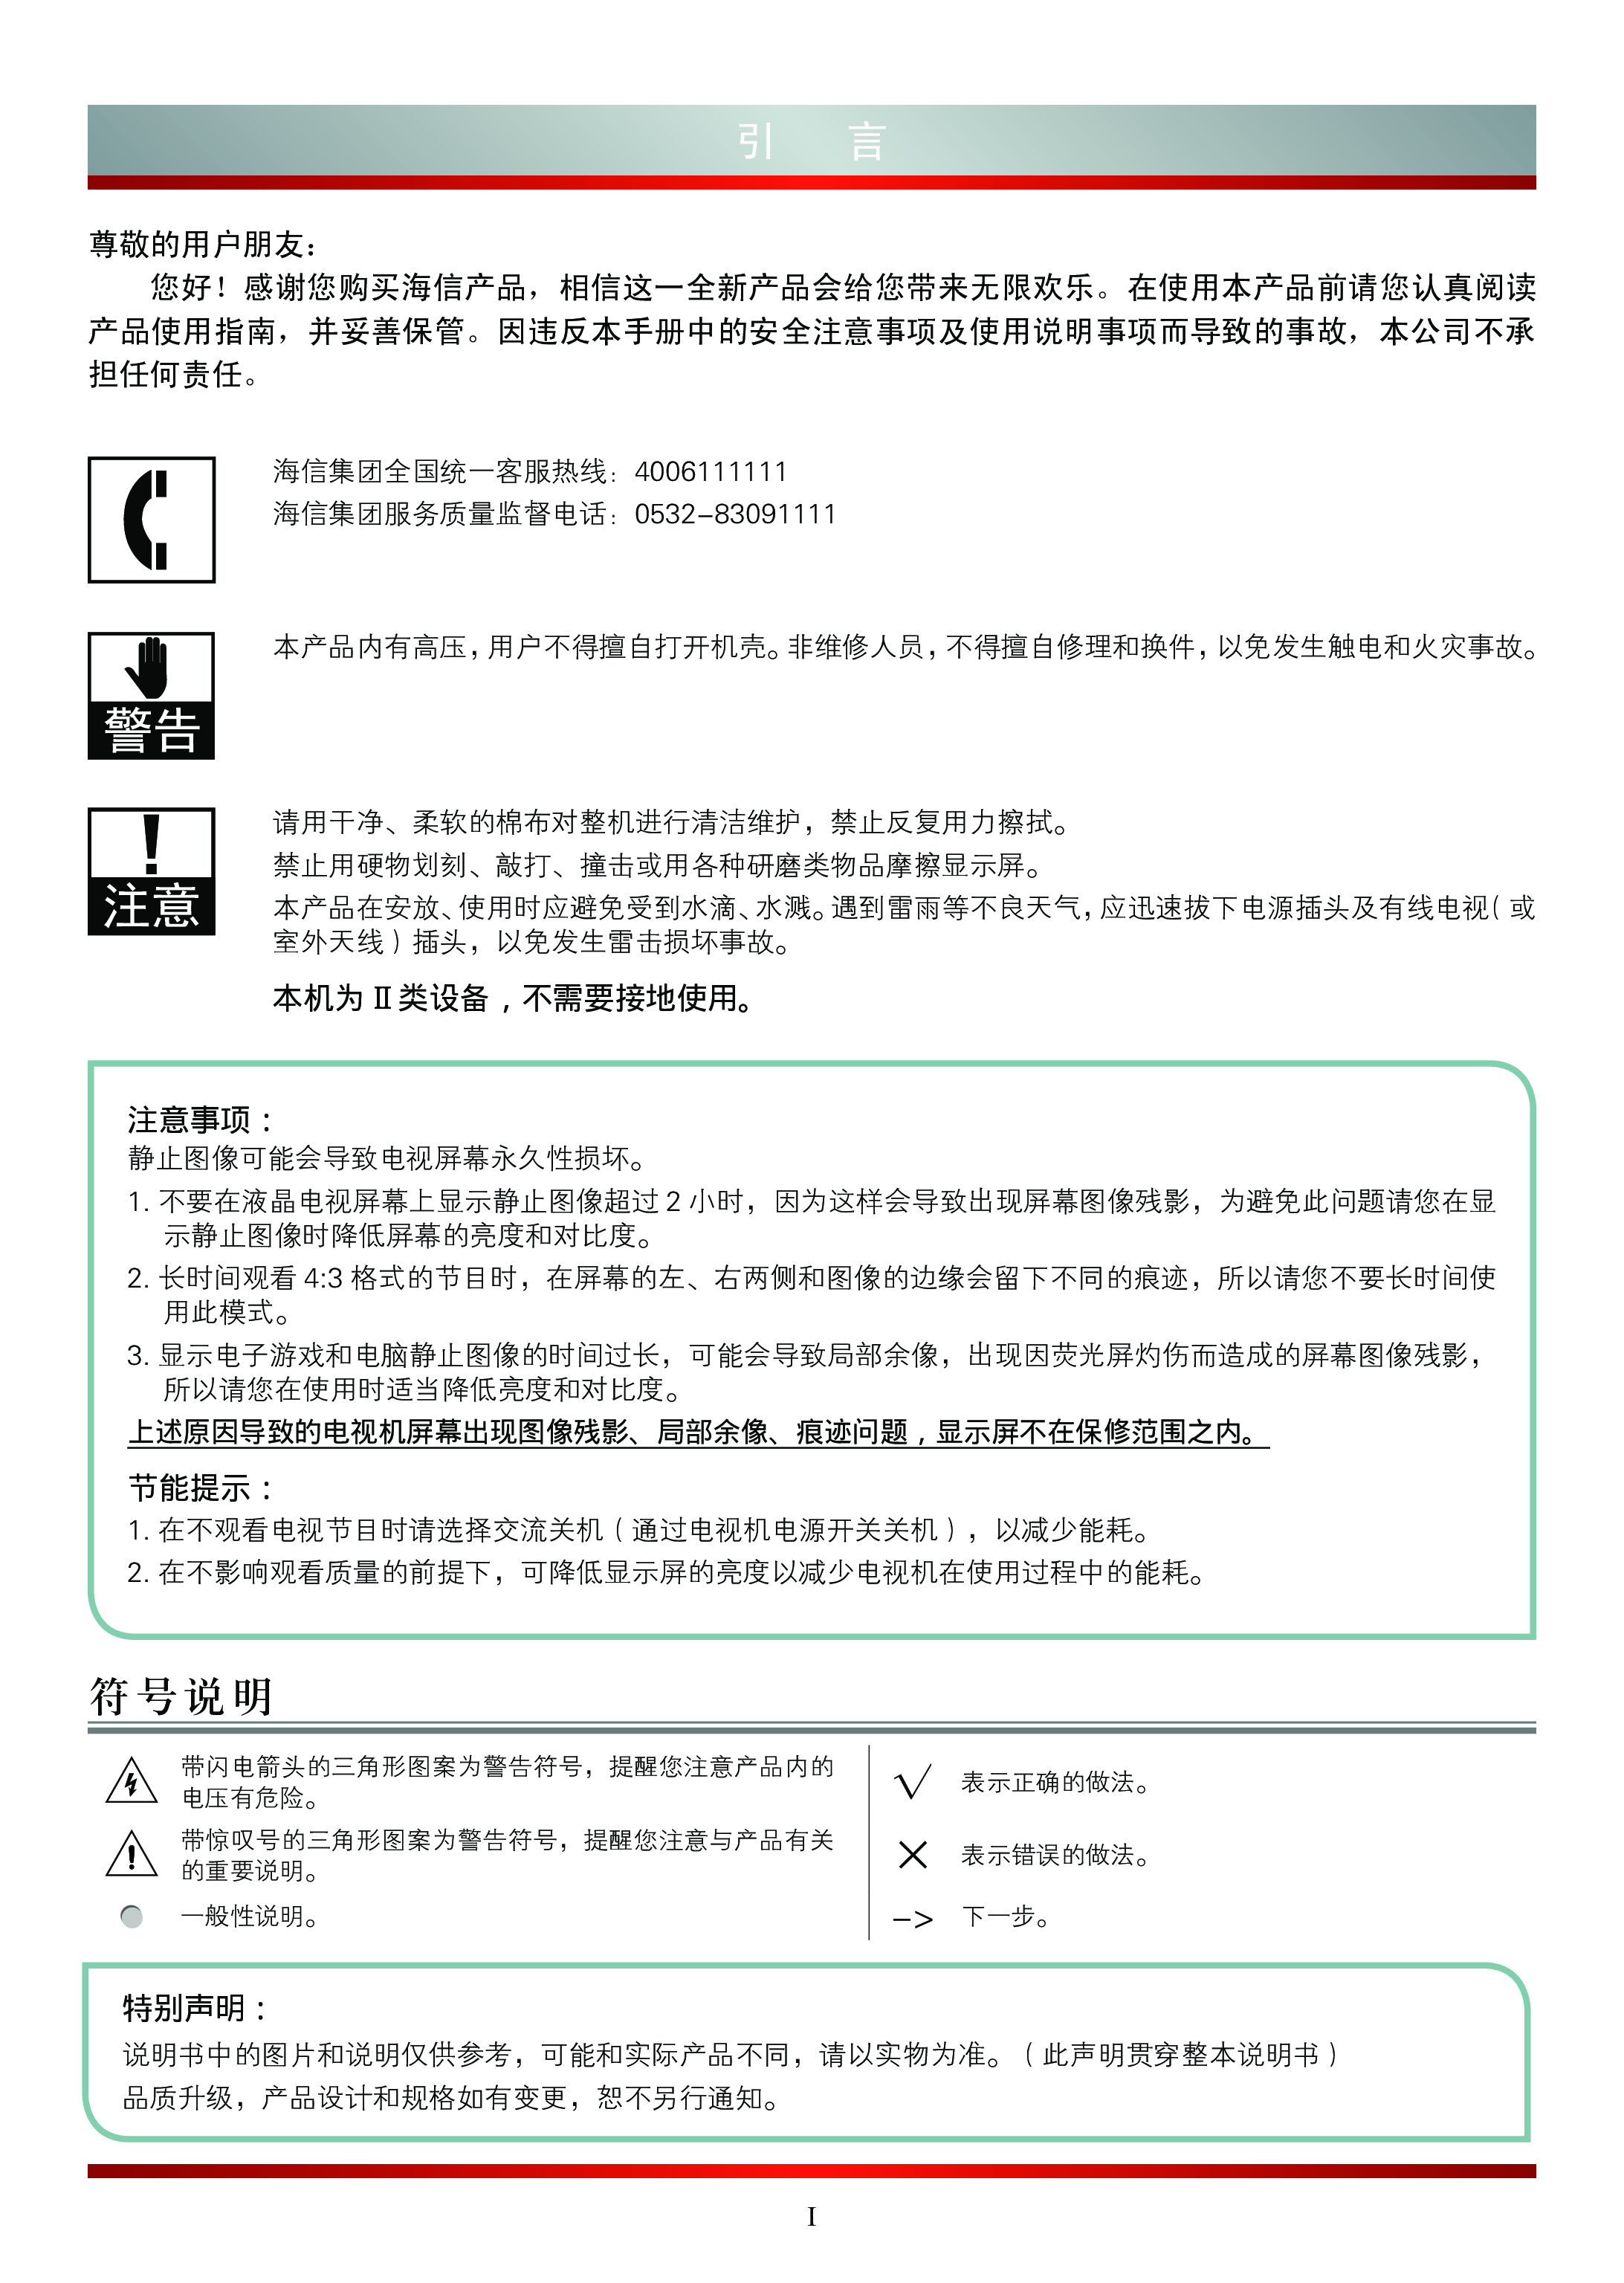 海信 Hisense LED39K680X3DU 使用说明书 第1页